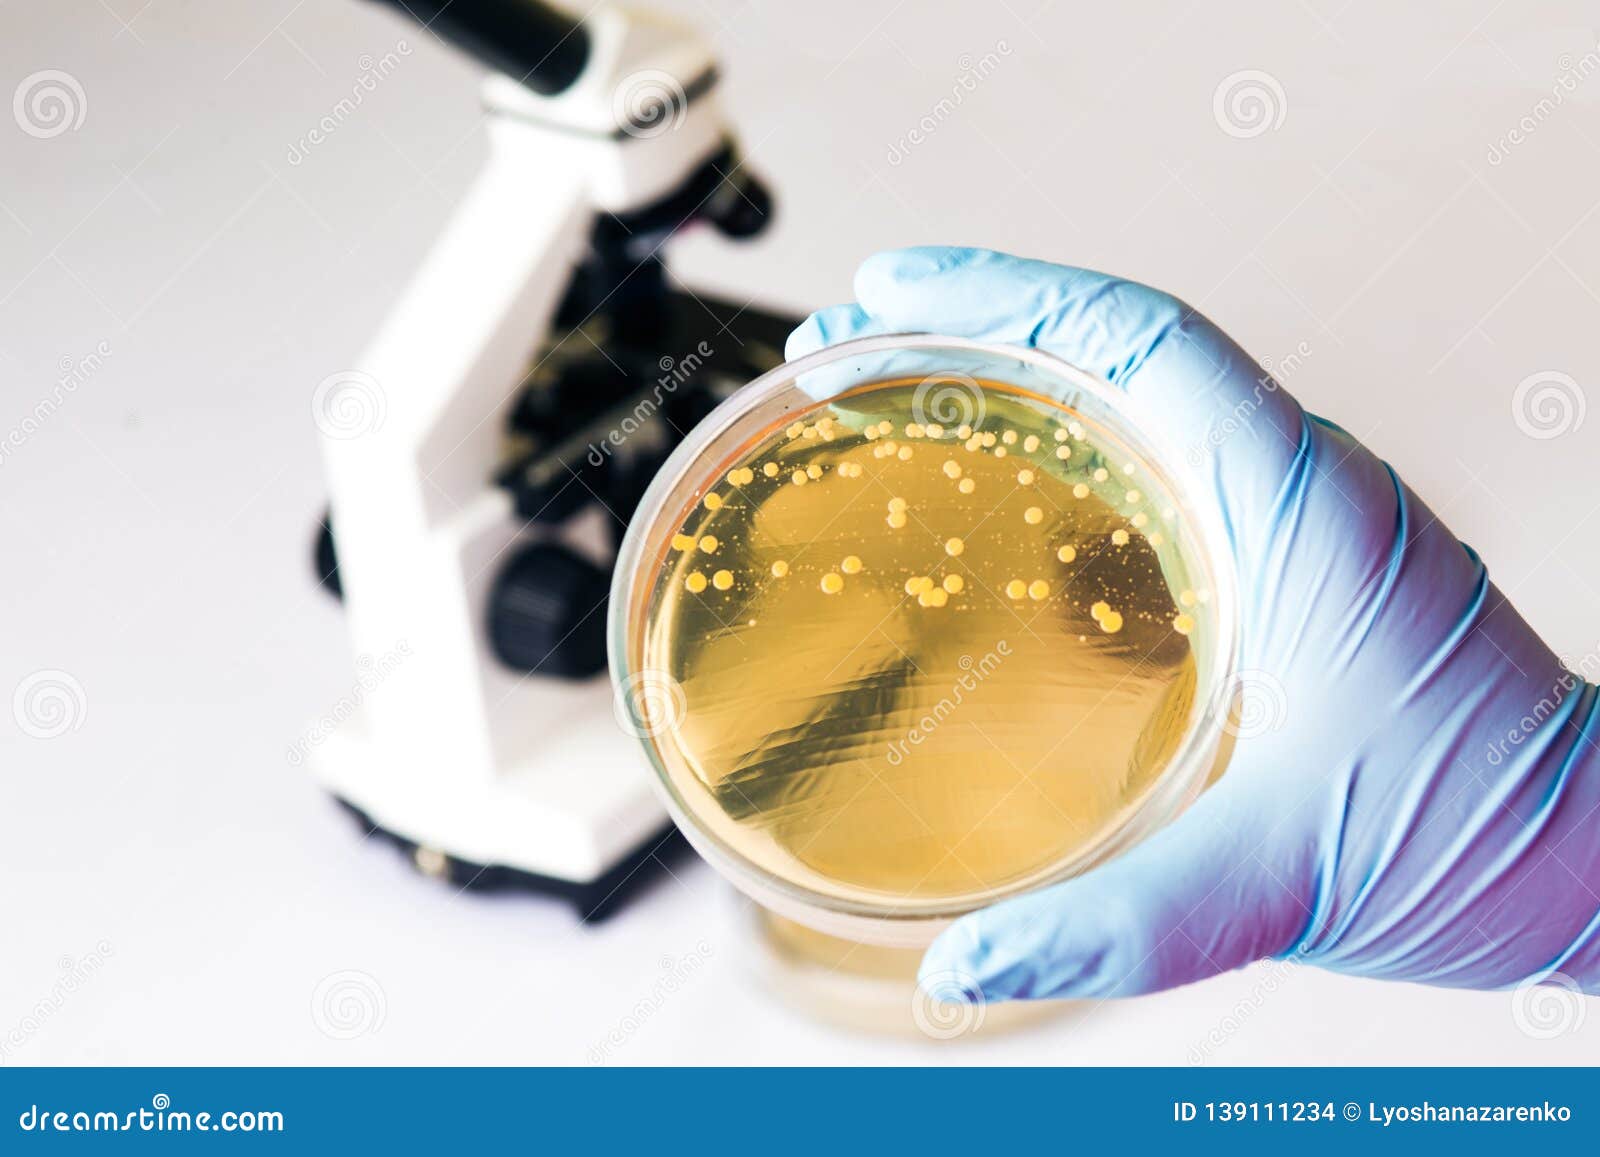 e.coli escherichia bacteria in petri dish in medical laboratory